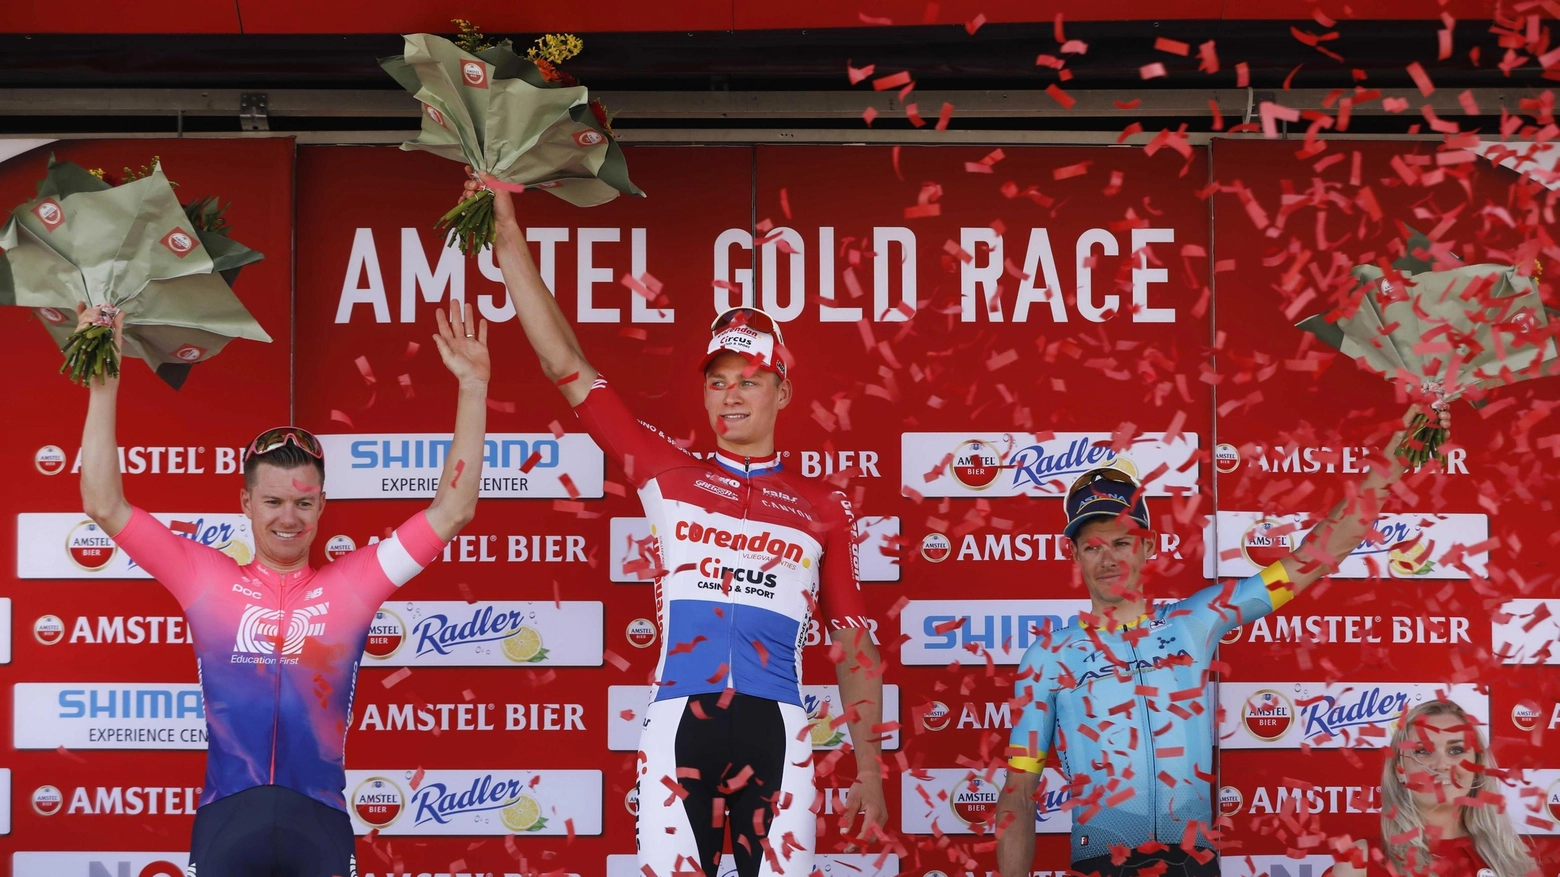 Il podio dell'Amstel Gold Race 2019